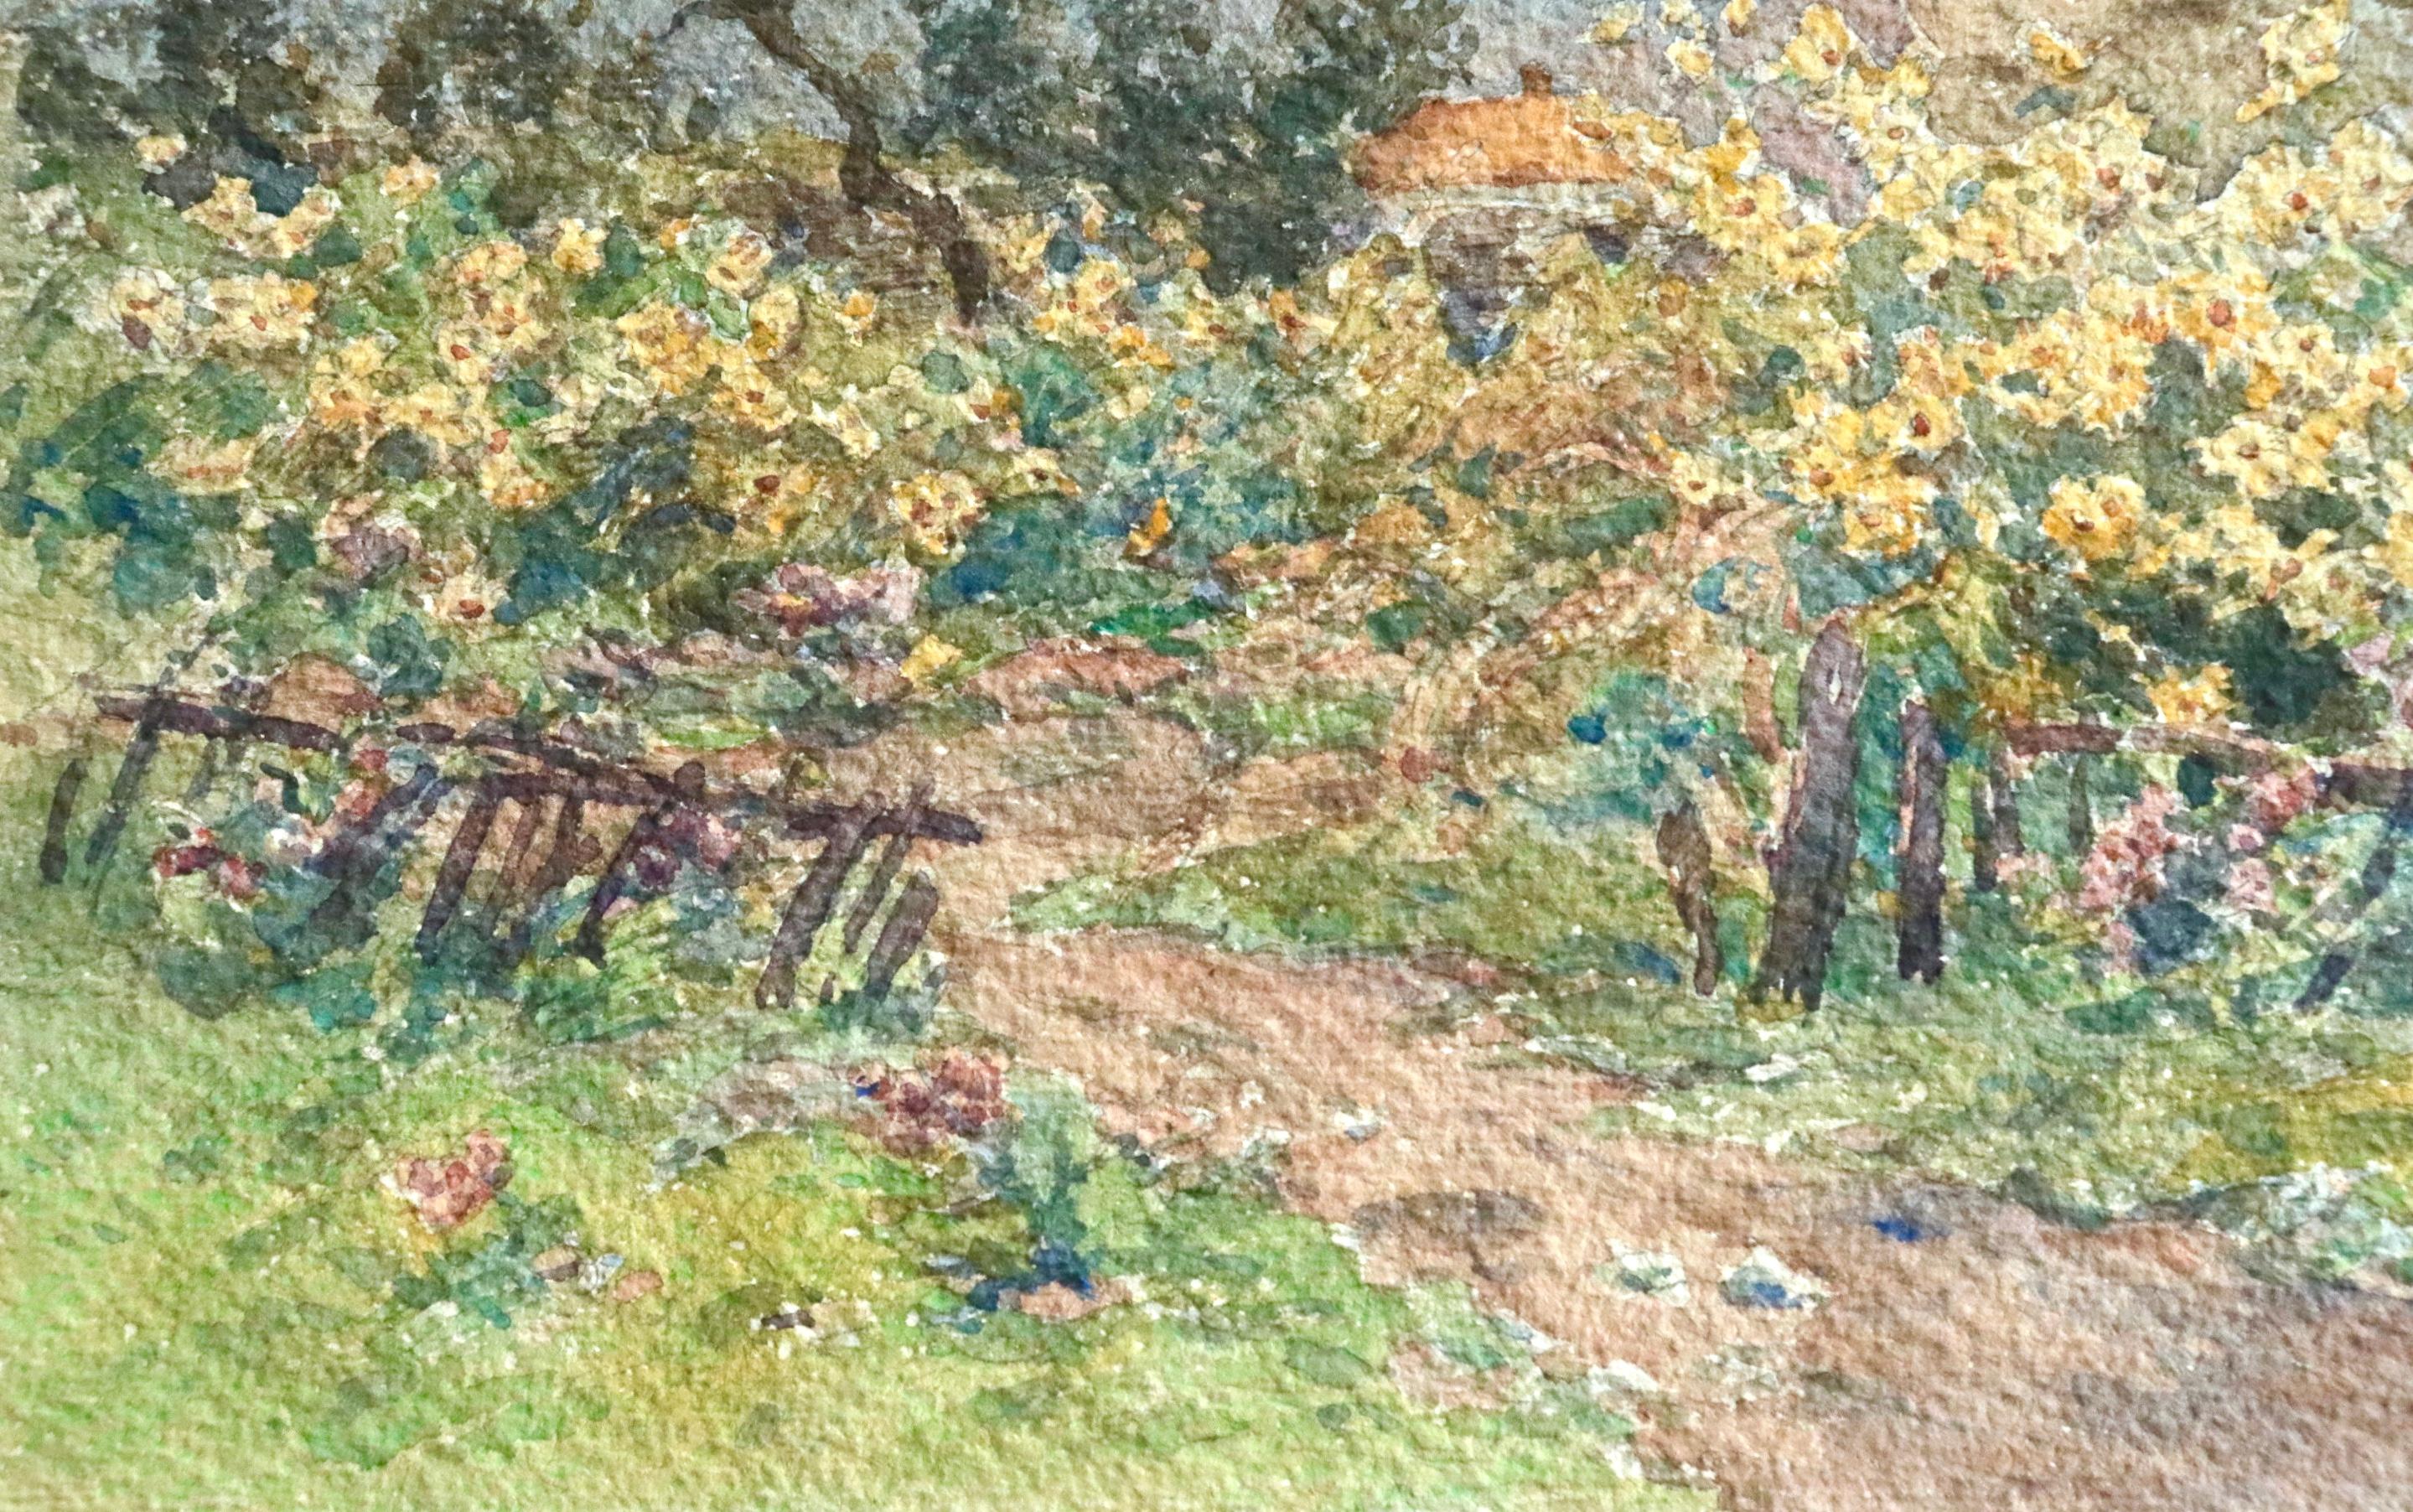 Fleurs d'automne - 19th Century Watercolor, Flowers in Autumn Landscape by Duhem 1